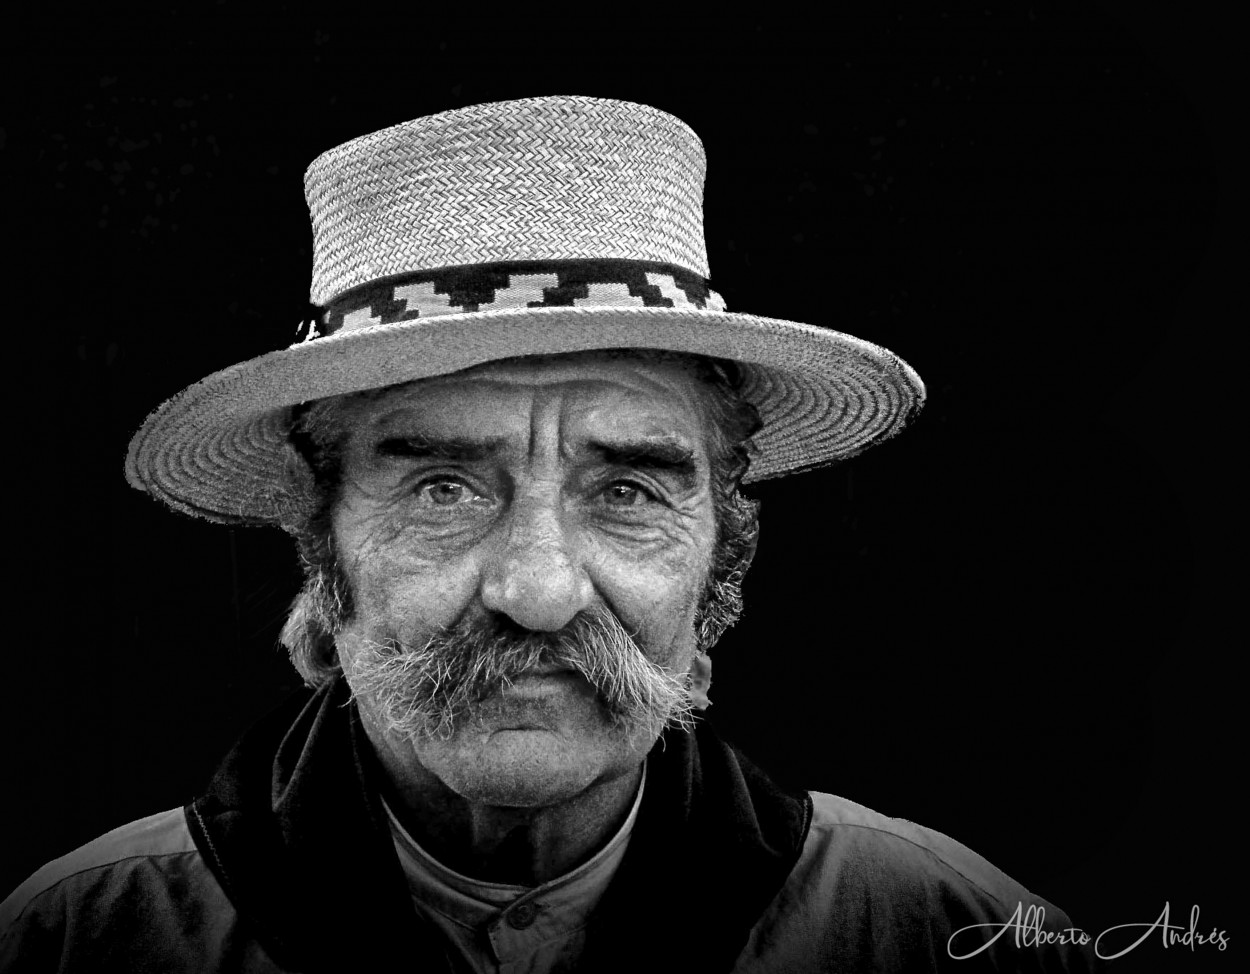 "Retrato de un gaucho en dia de fiesta" de Alberto Andrs Melo